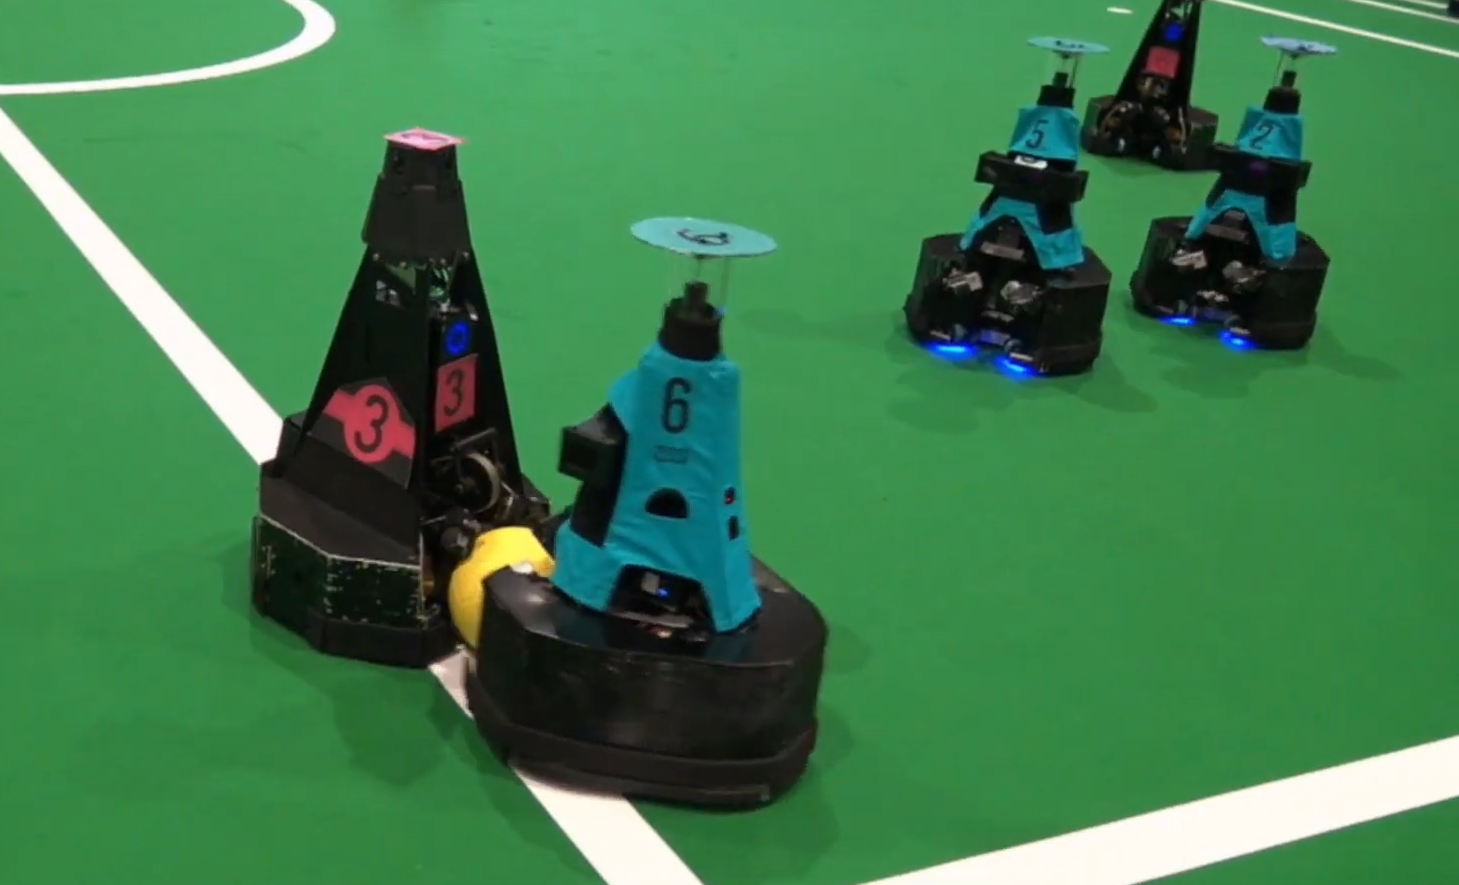 five-waist-high-pyramidal-mobile-robots-